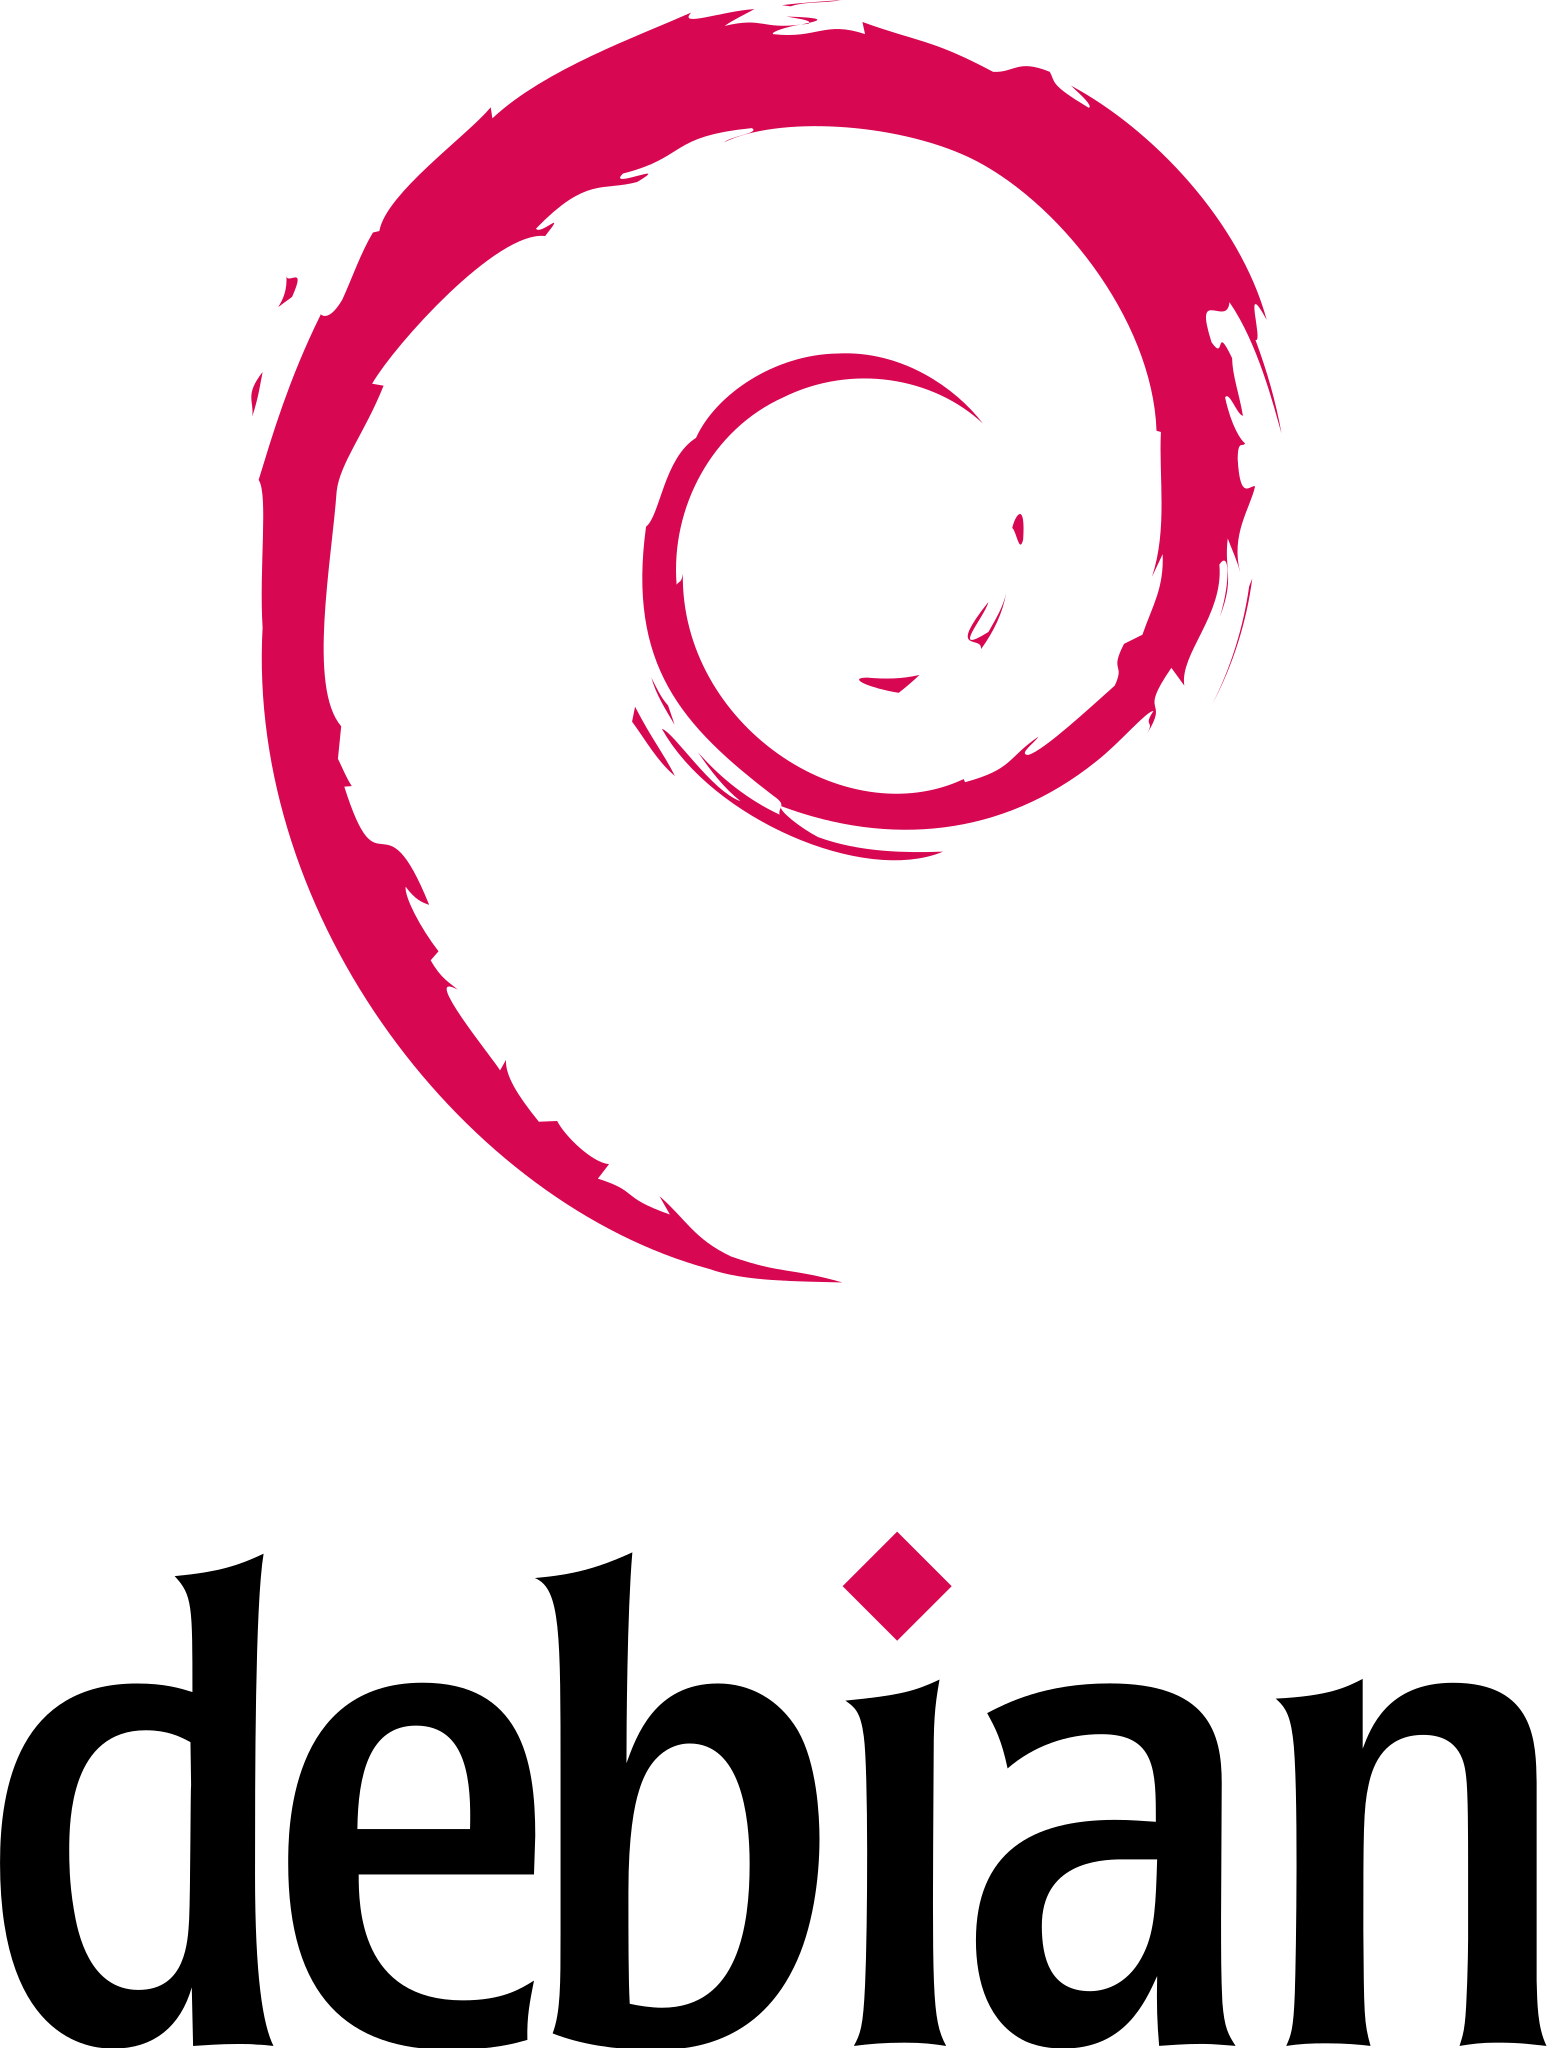 为 StarFive VisionFive V1 创建 Debian 系统镜像